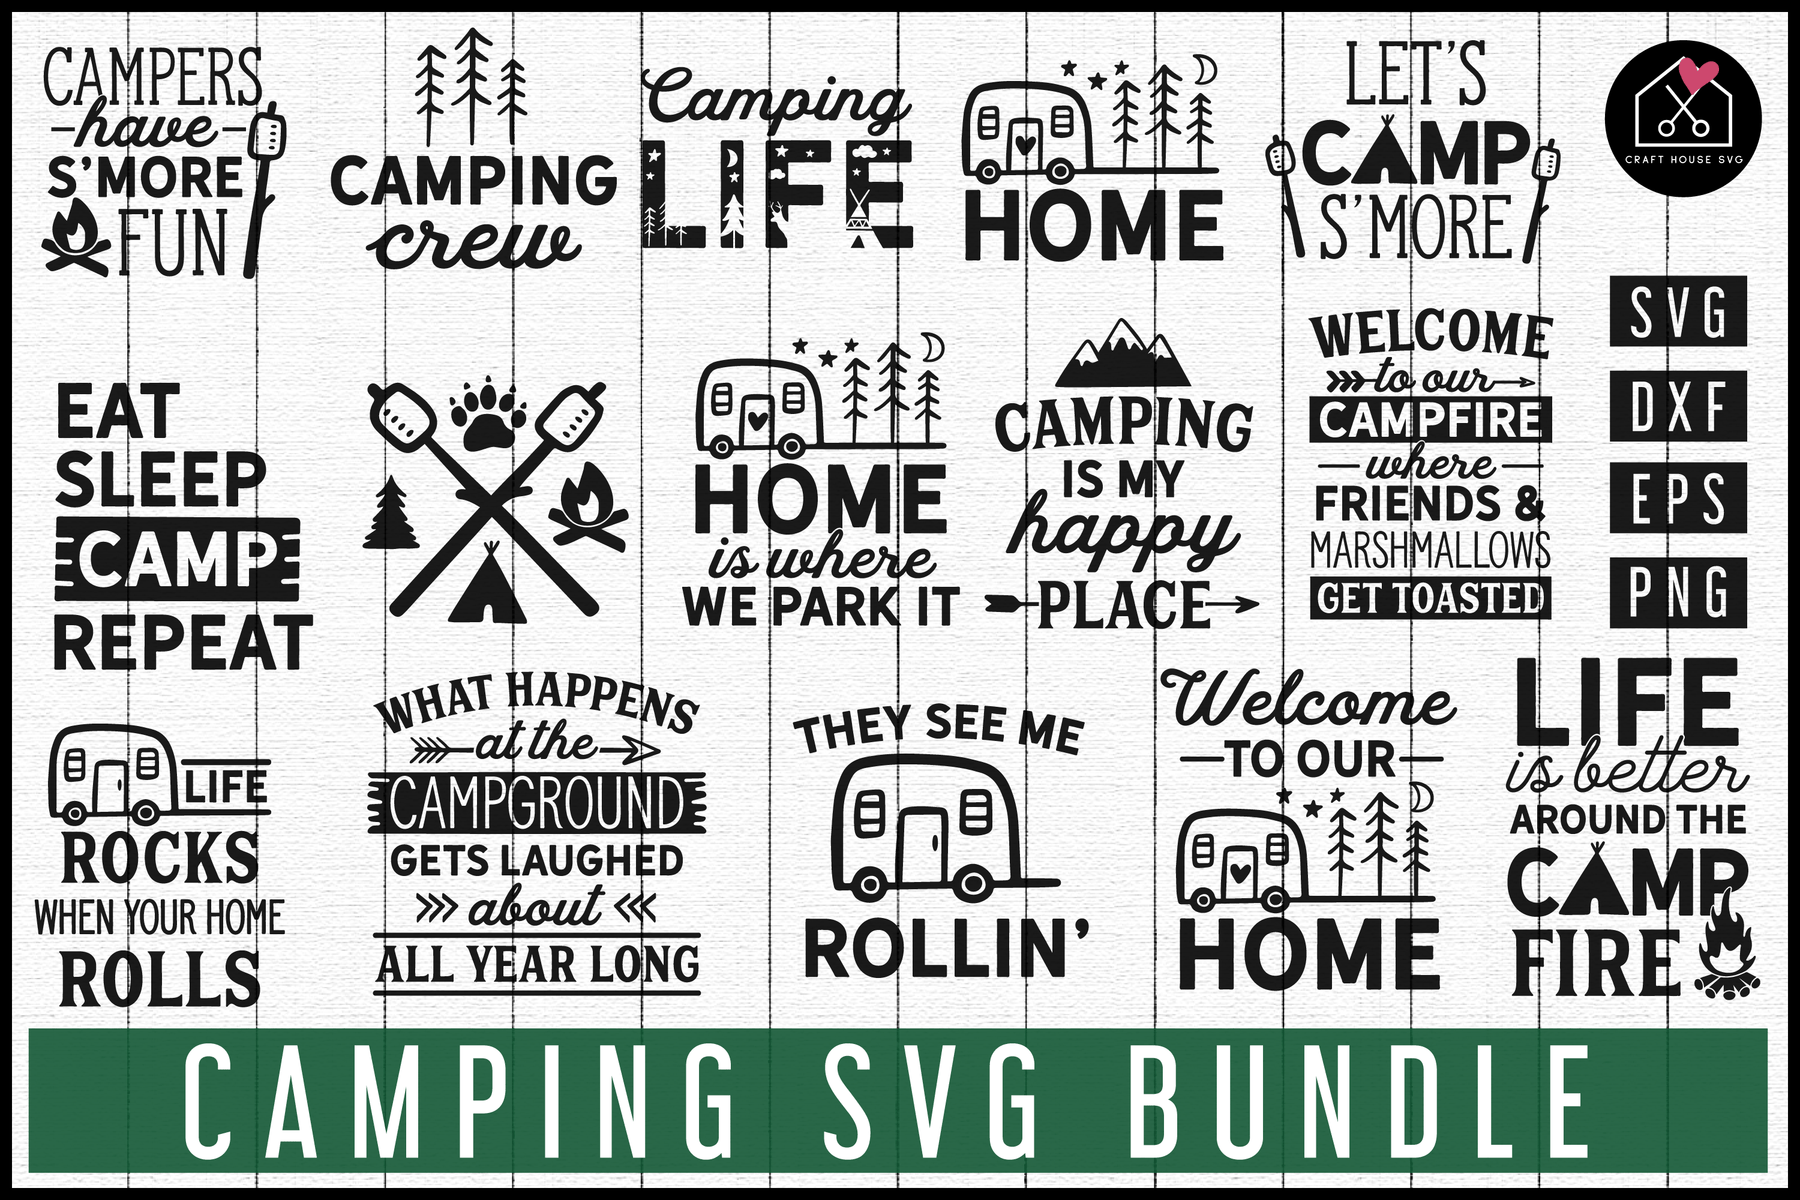 Download Camping SVG Bundle | MB67 - Craft House SVG